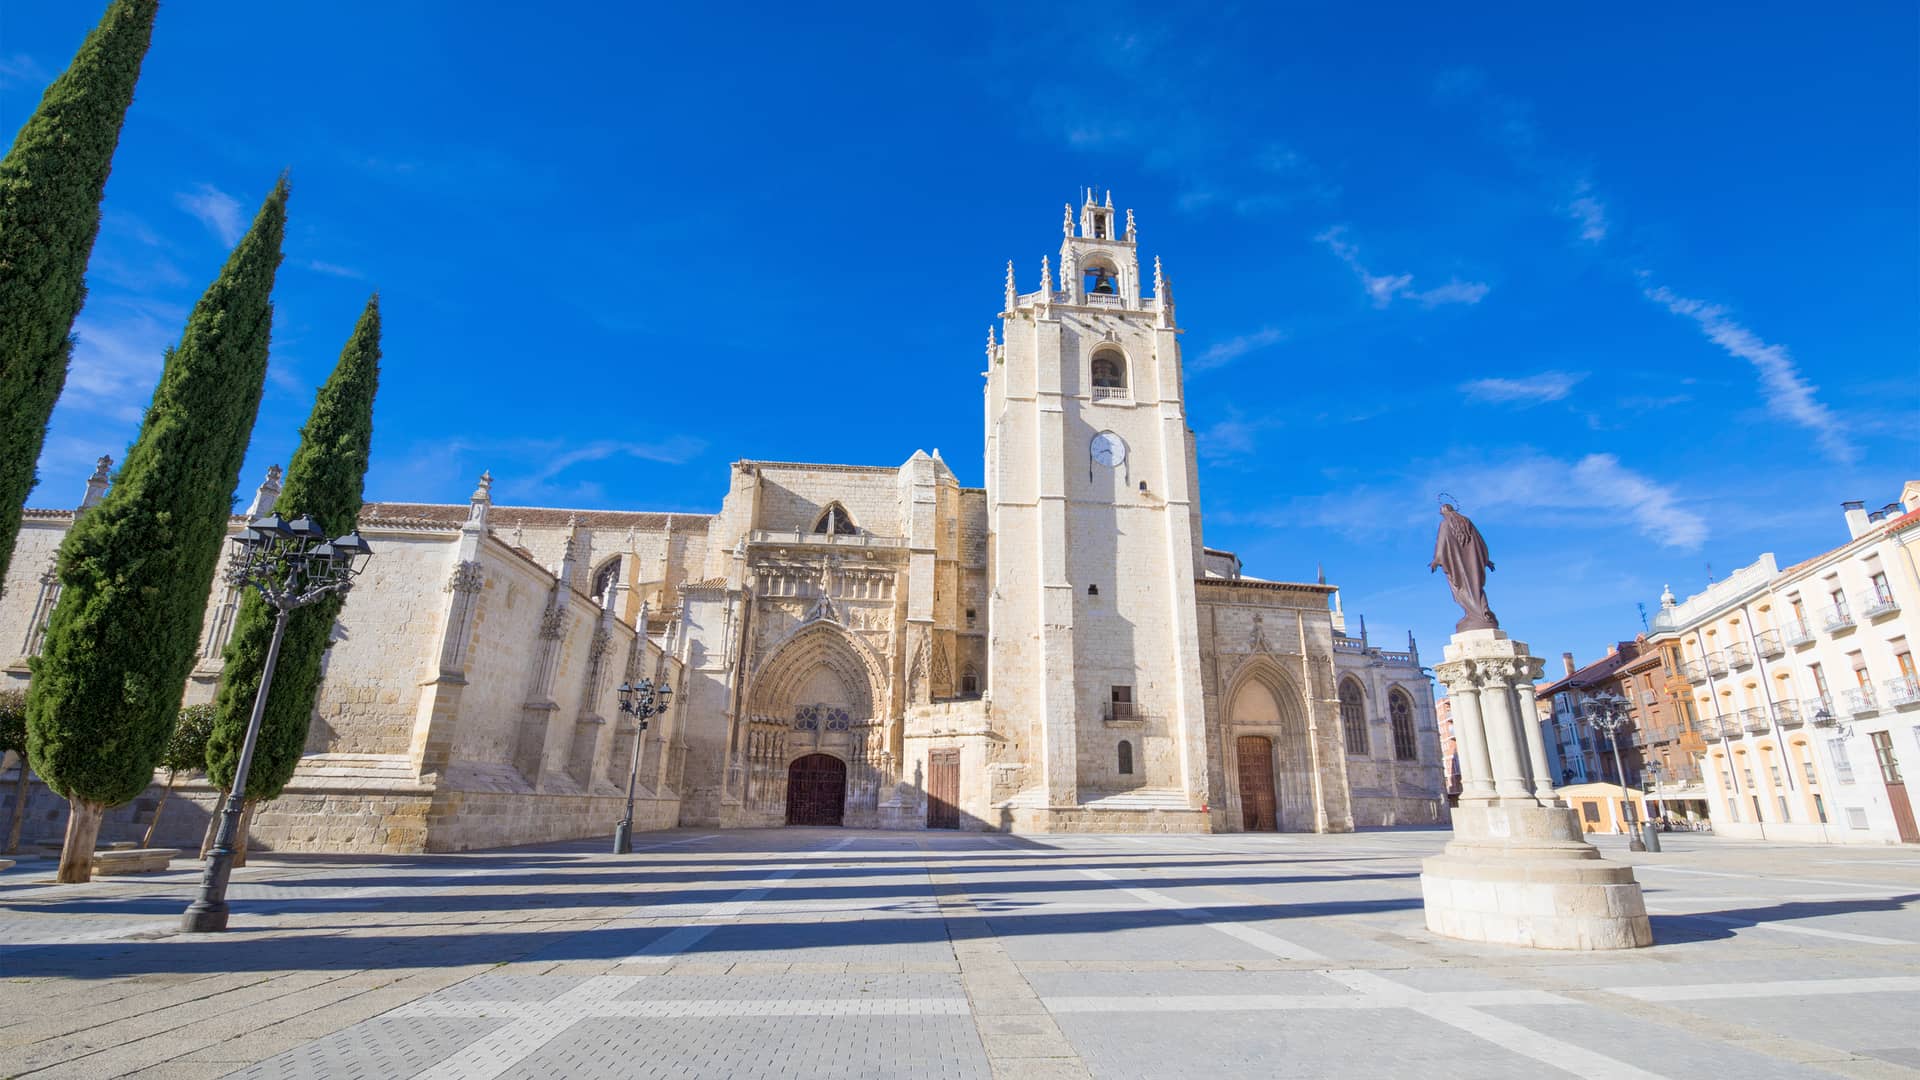 Fachada principal de Catedral de San Antolin en Palencia donde esta disponible el operador telefónico finetwork